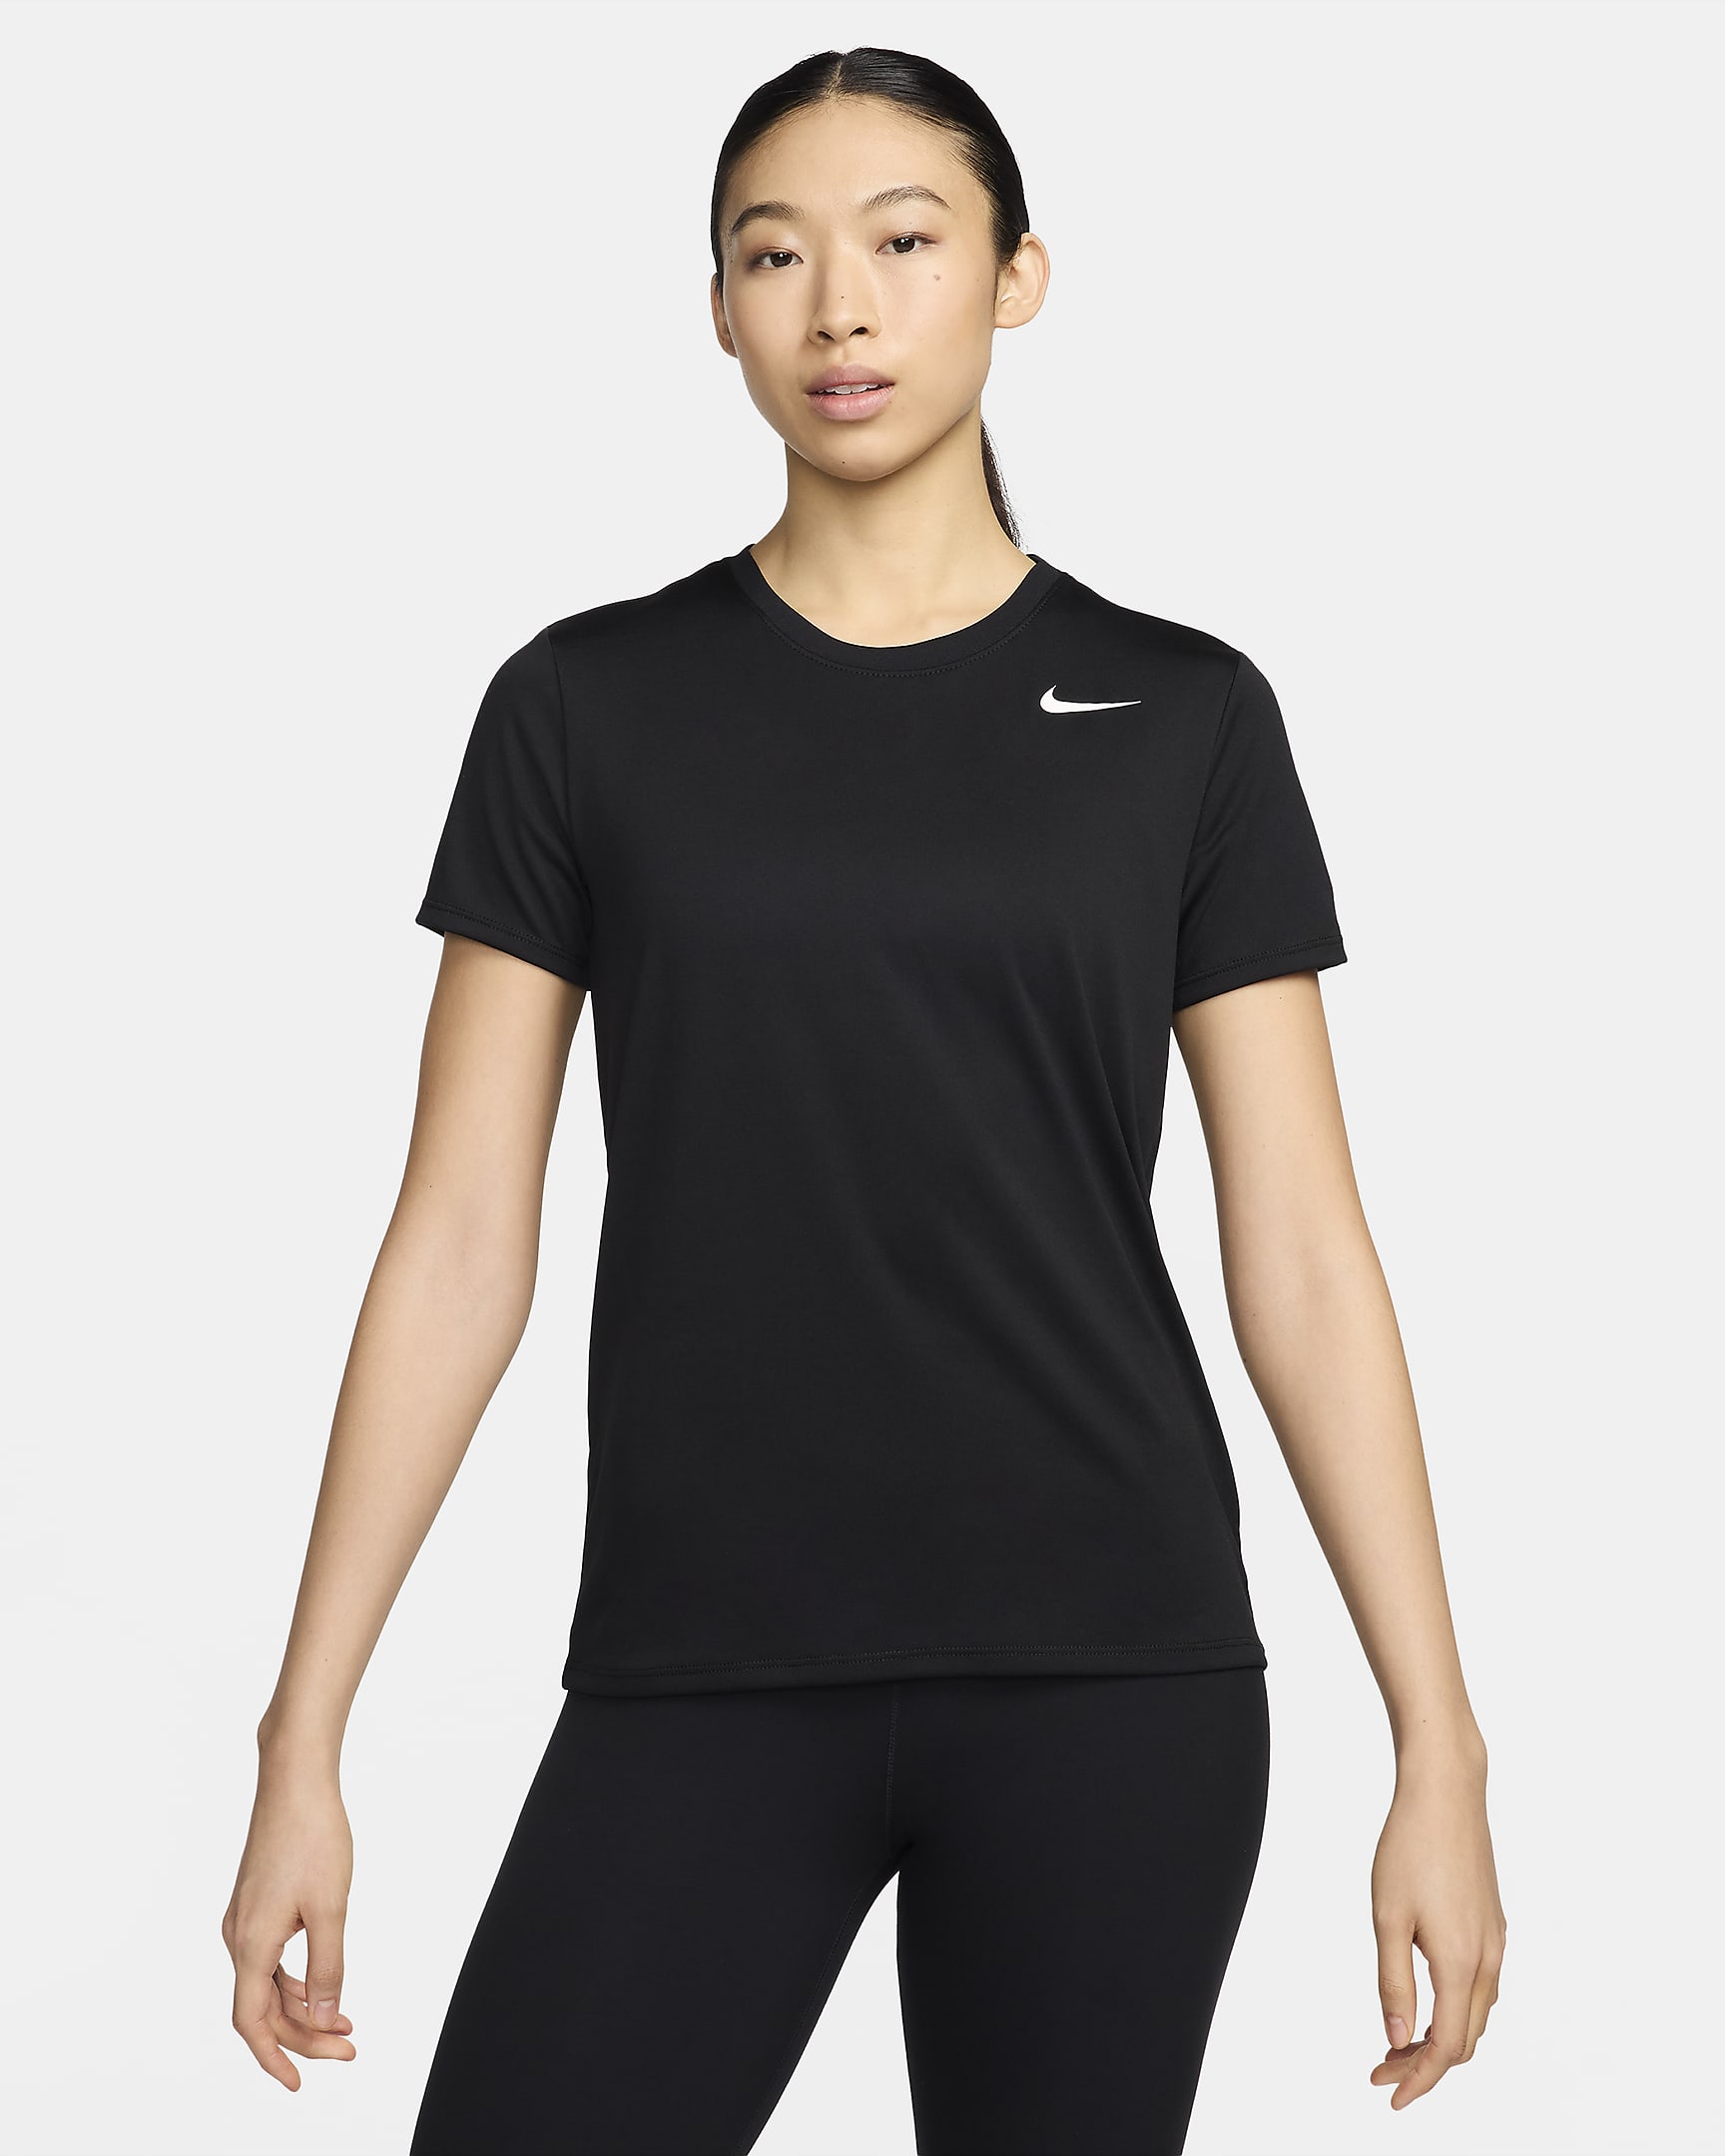 Nike Dri-FIT Women's T-Shirt. Nike SG